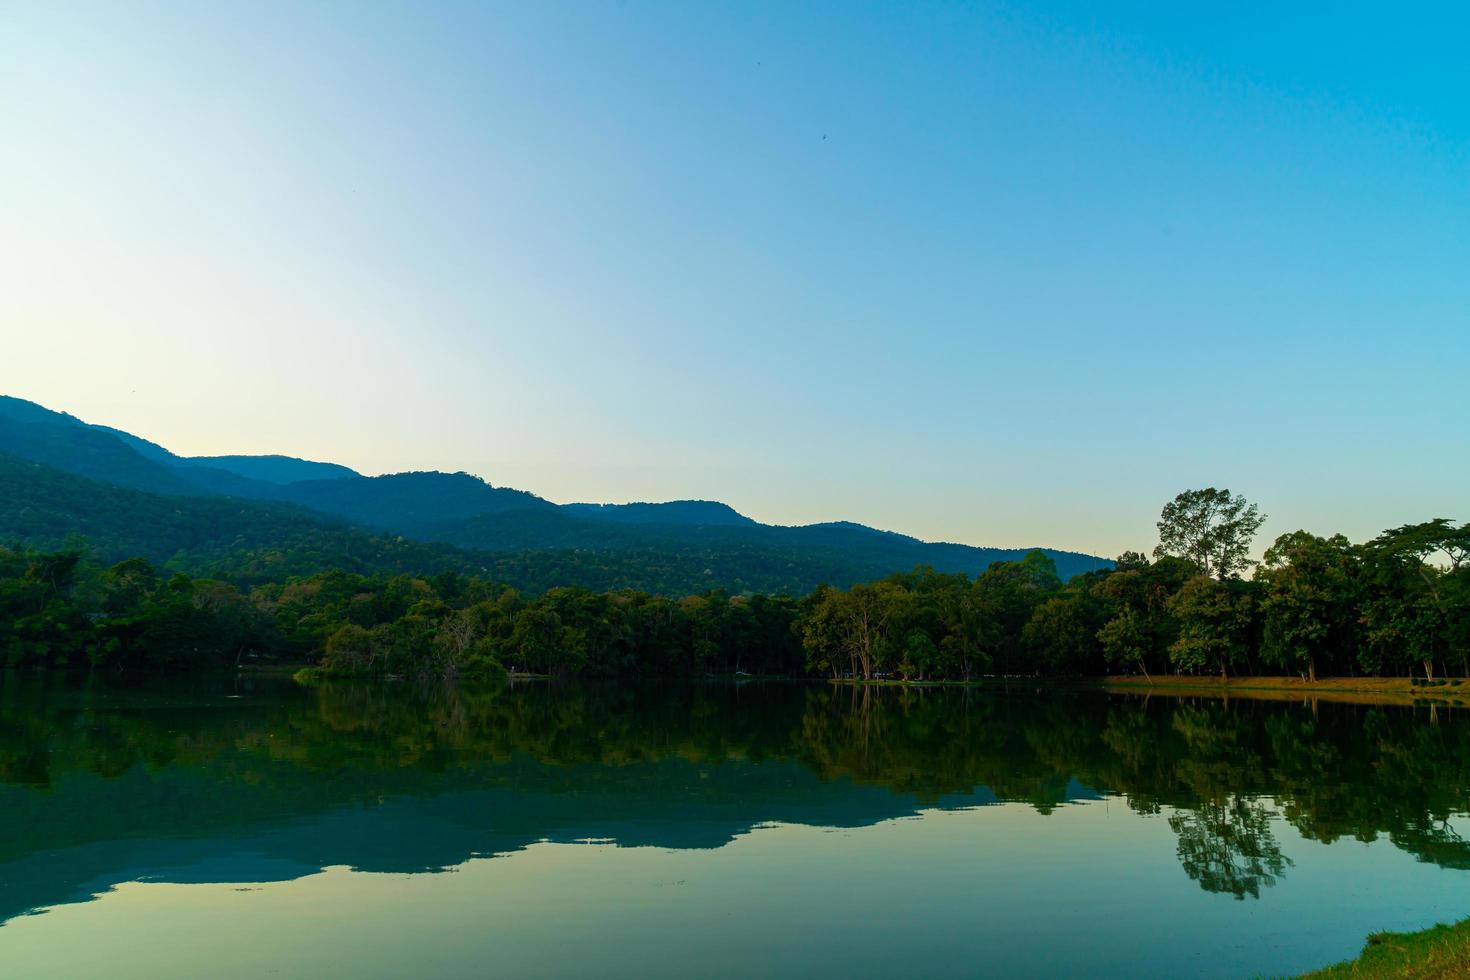 ang kaew sjö vid Chiang Mai universitet med skogsklädda berg foto